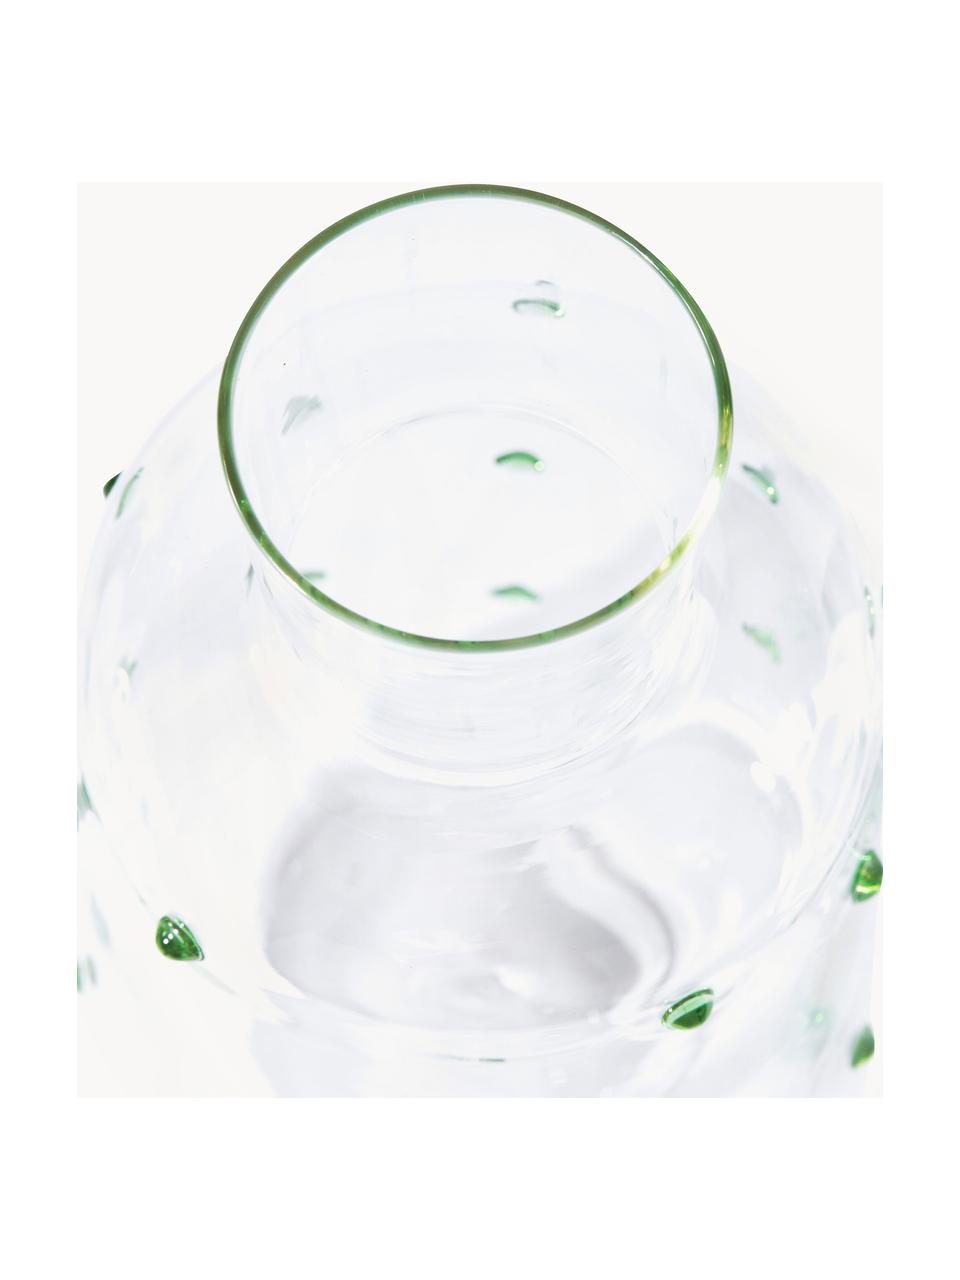 Caraffa in vetro borosilicato soffiatoNob, 2 L, Vetro borosilicato, soffiato a bocca, Trasparente, verde, 2 L